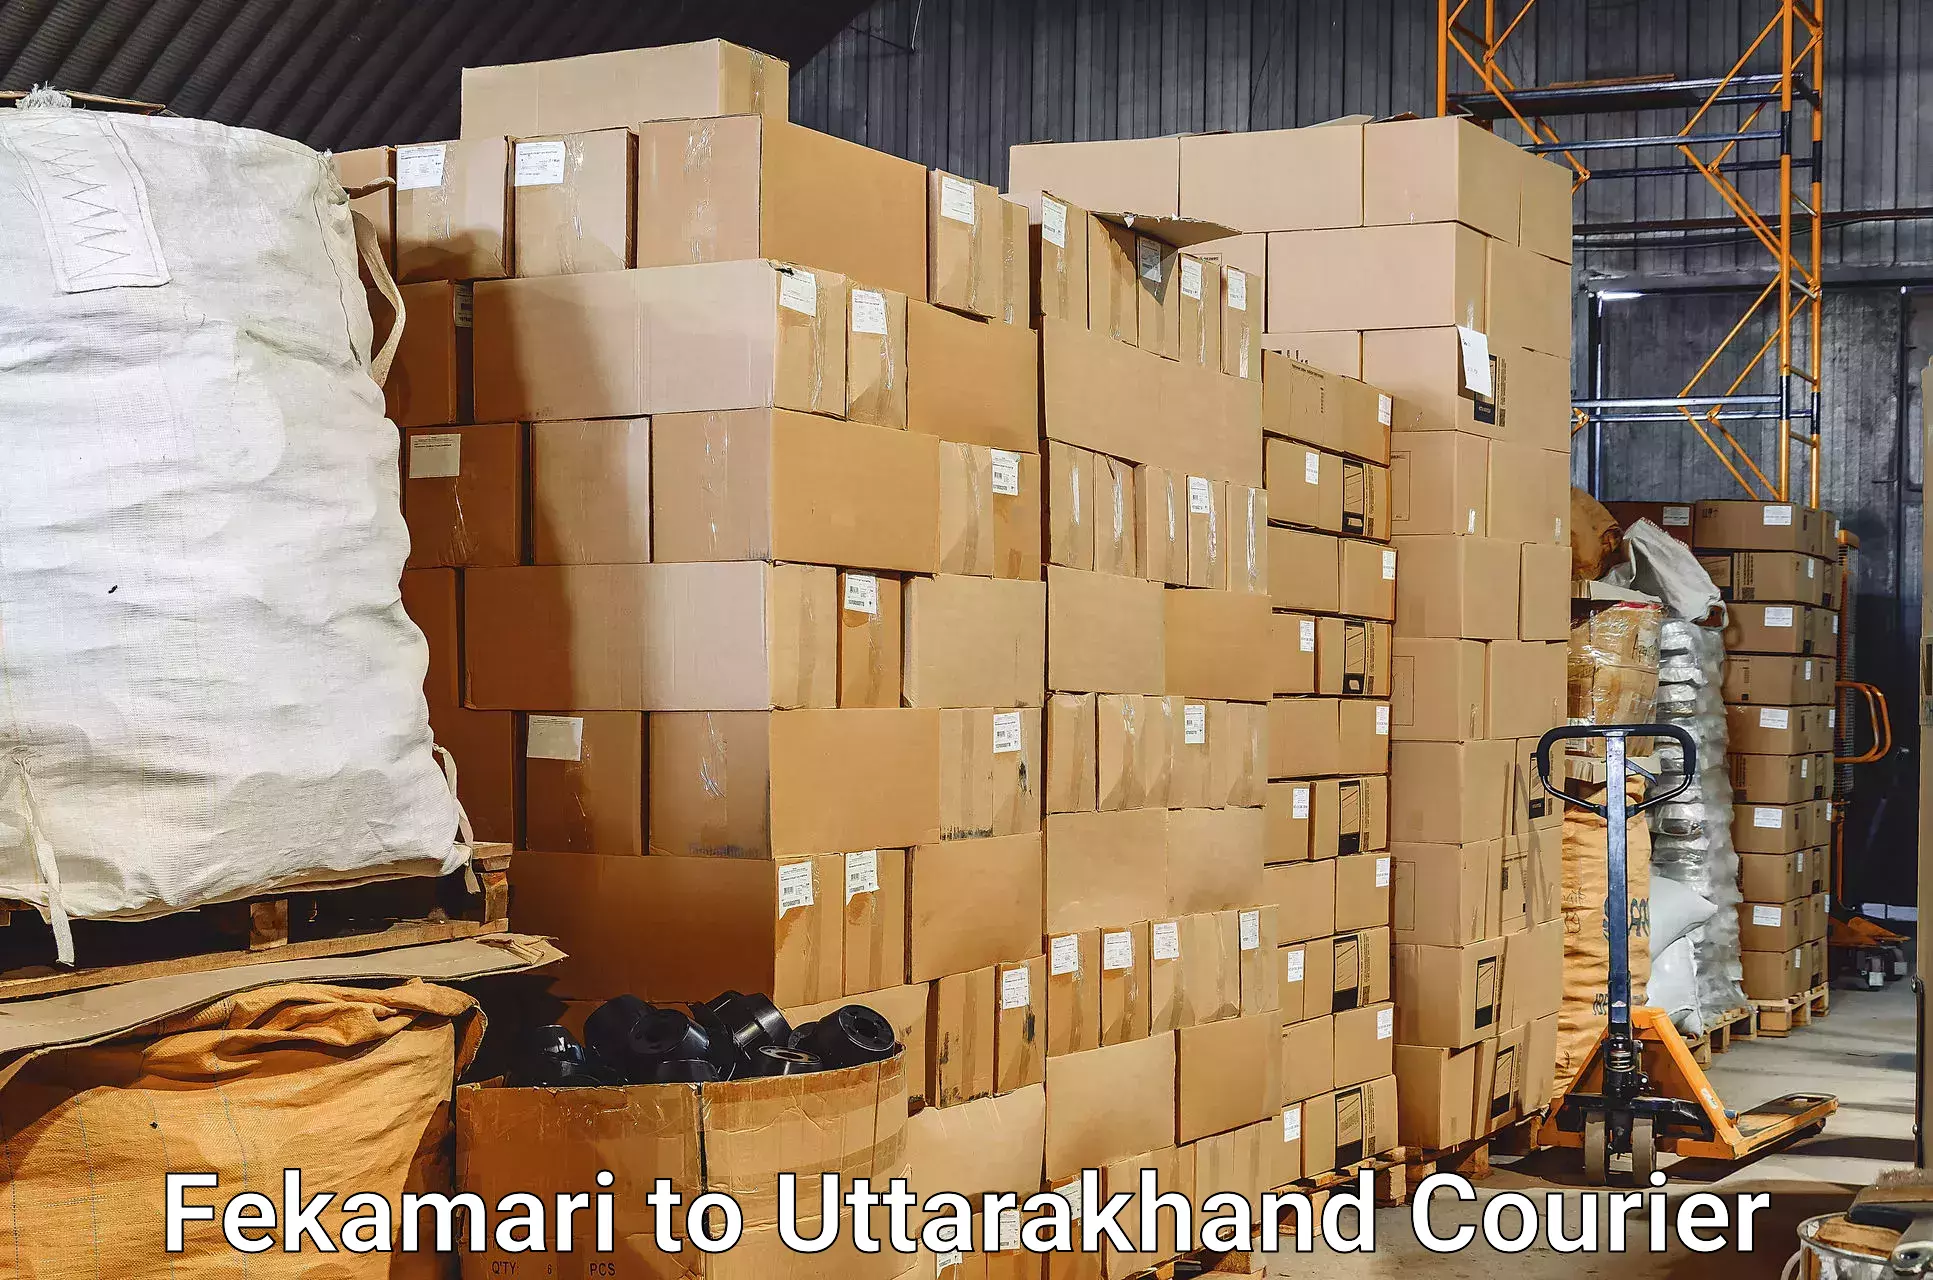 Luggage transfer service Fekamari to Pithoragarh